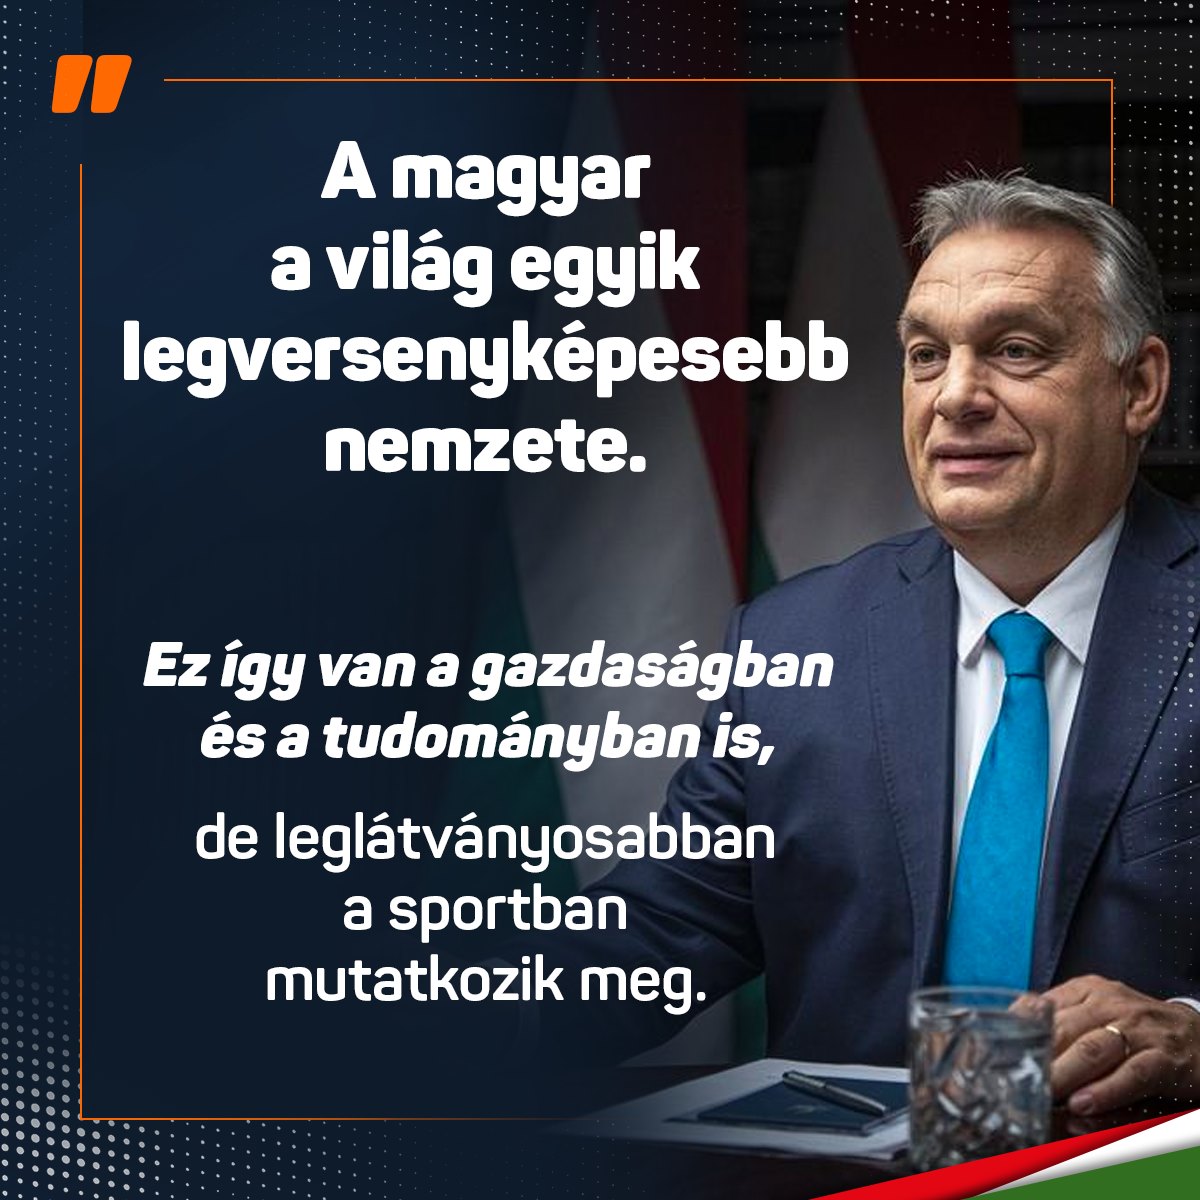 A magyar a világ egyik legversenyképesebb nemzete!